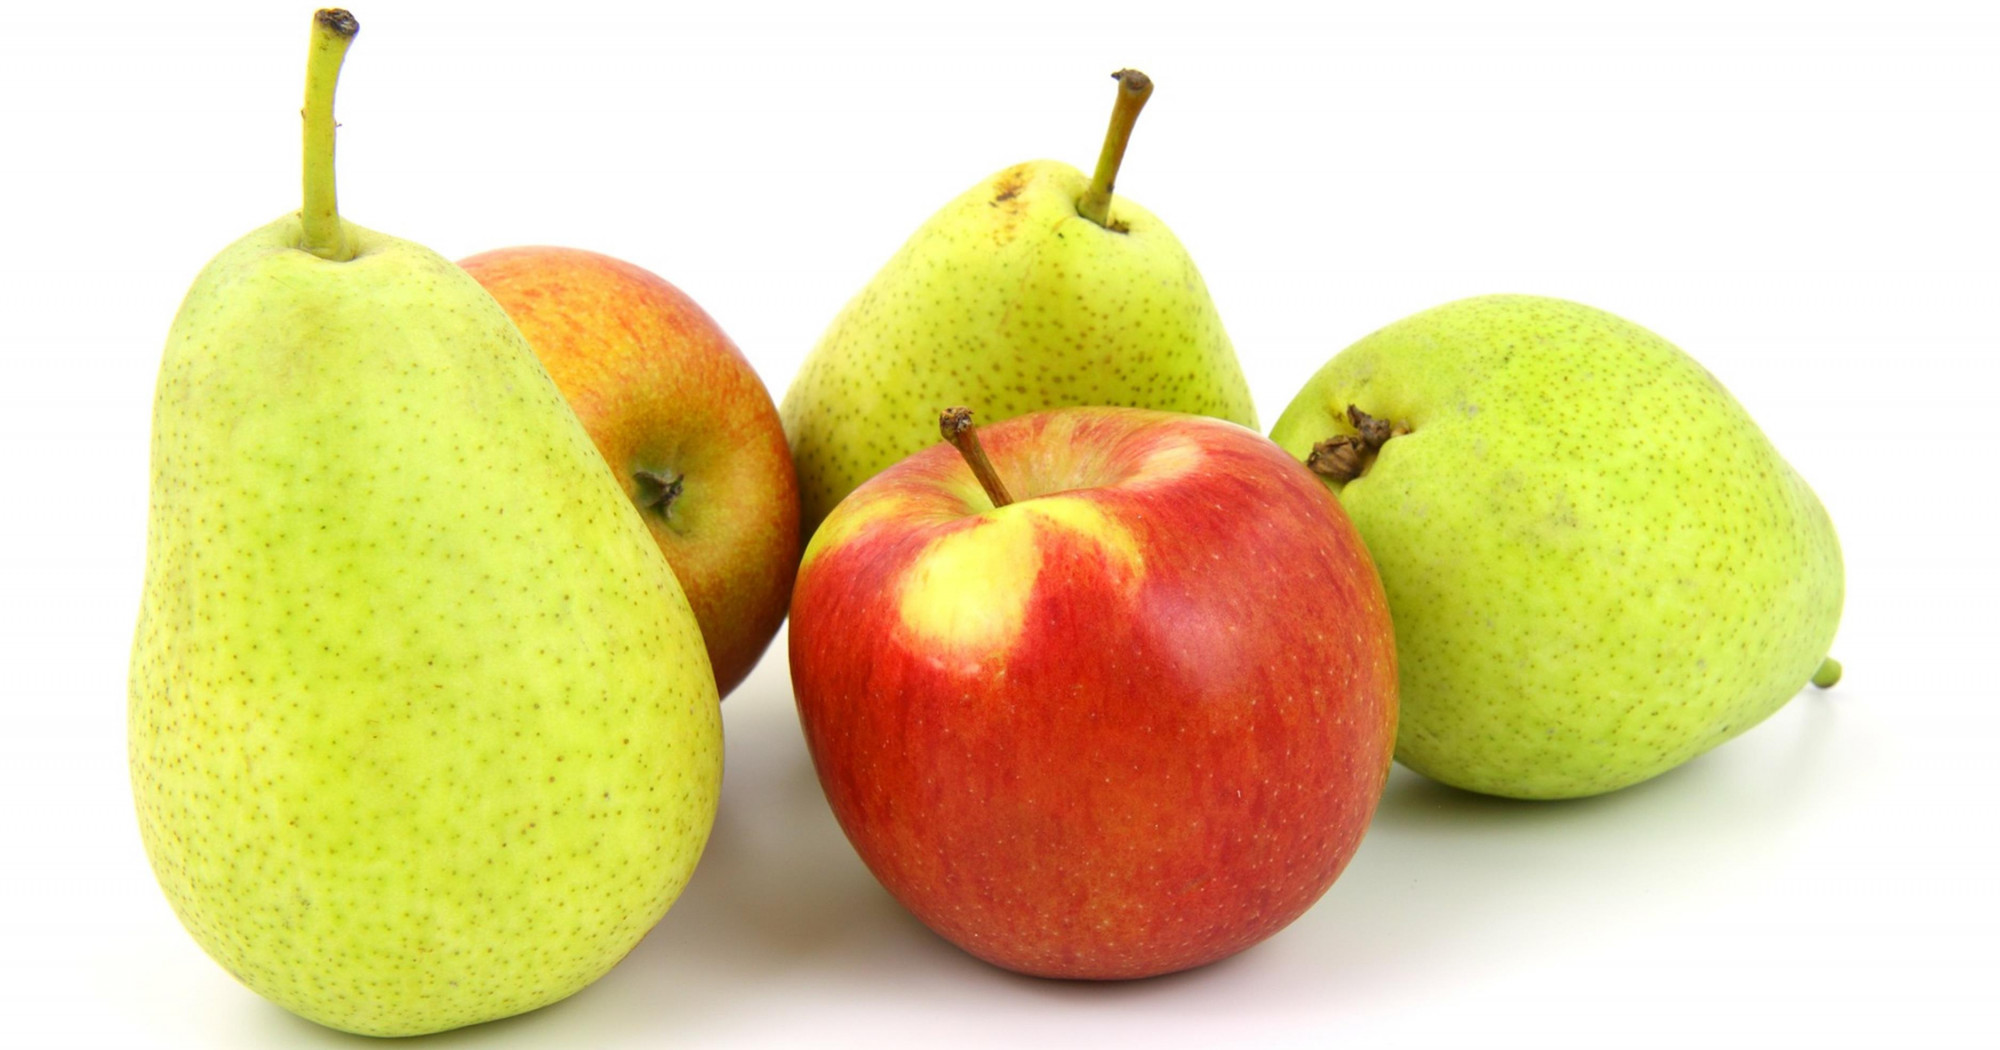 https://cdn.viva.org.uk/wp-content/uploads/2020/02/apples-and-pears.jpg